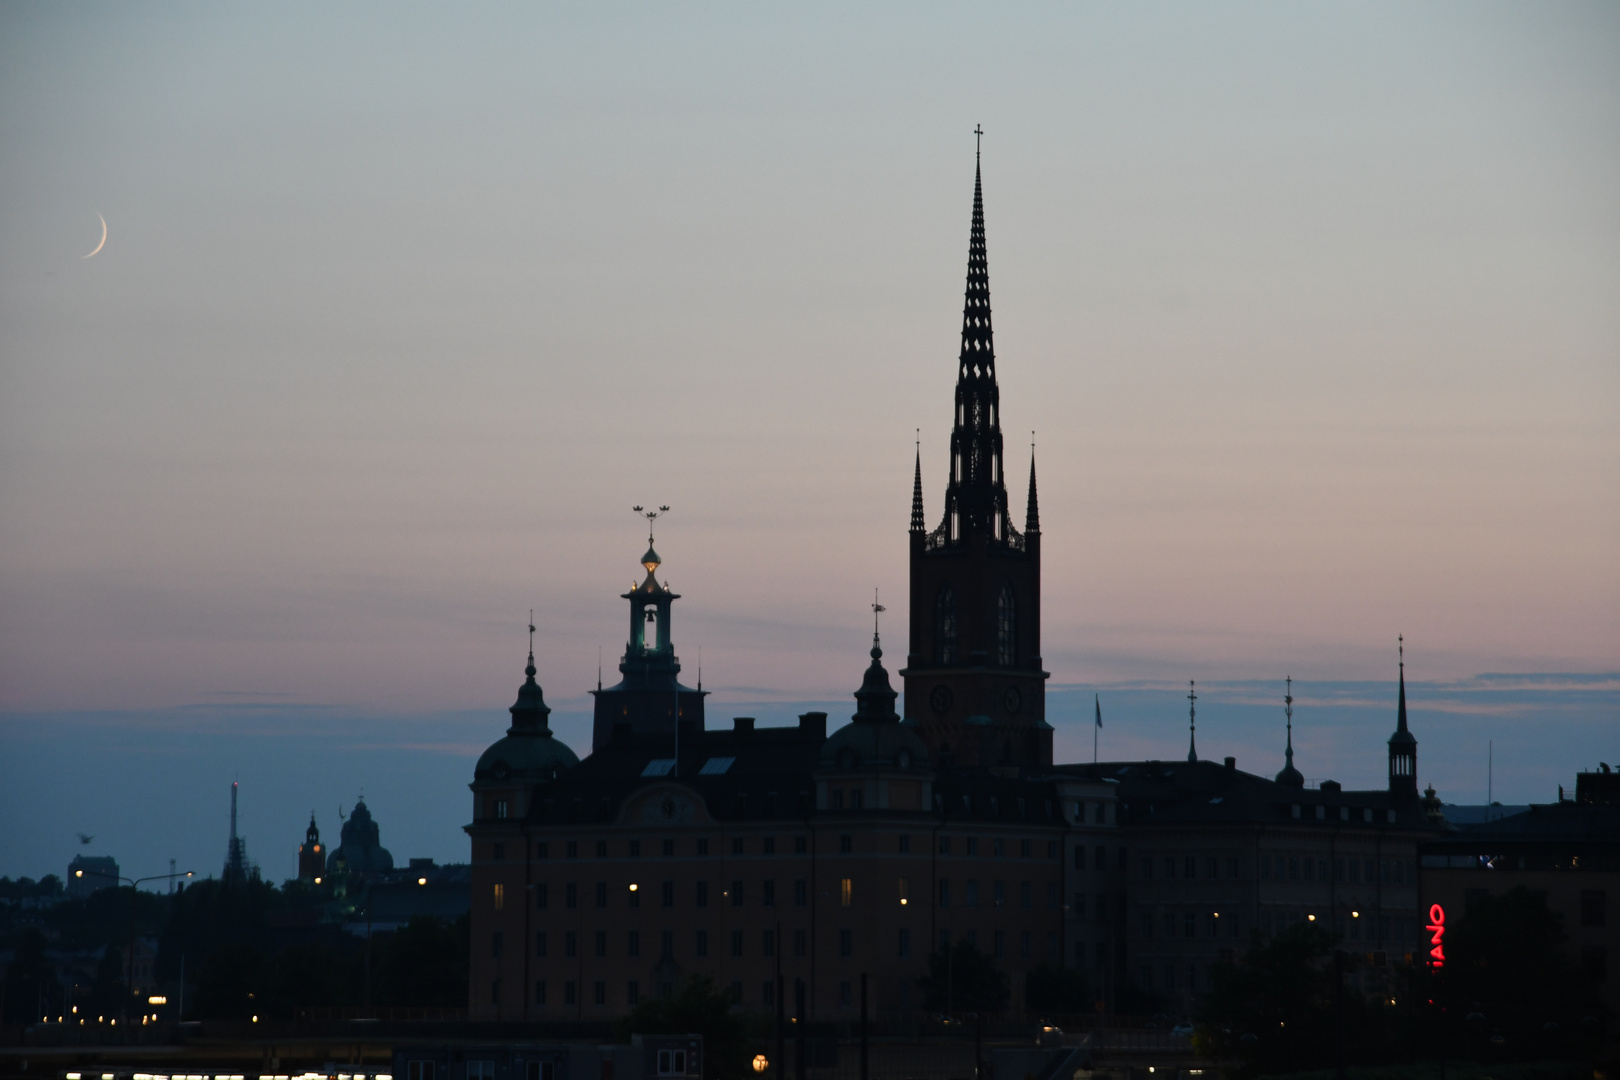 Stockholm am späten Abend, Riddarholmskirche